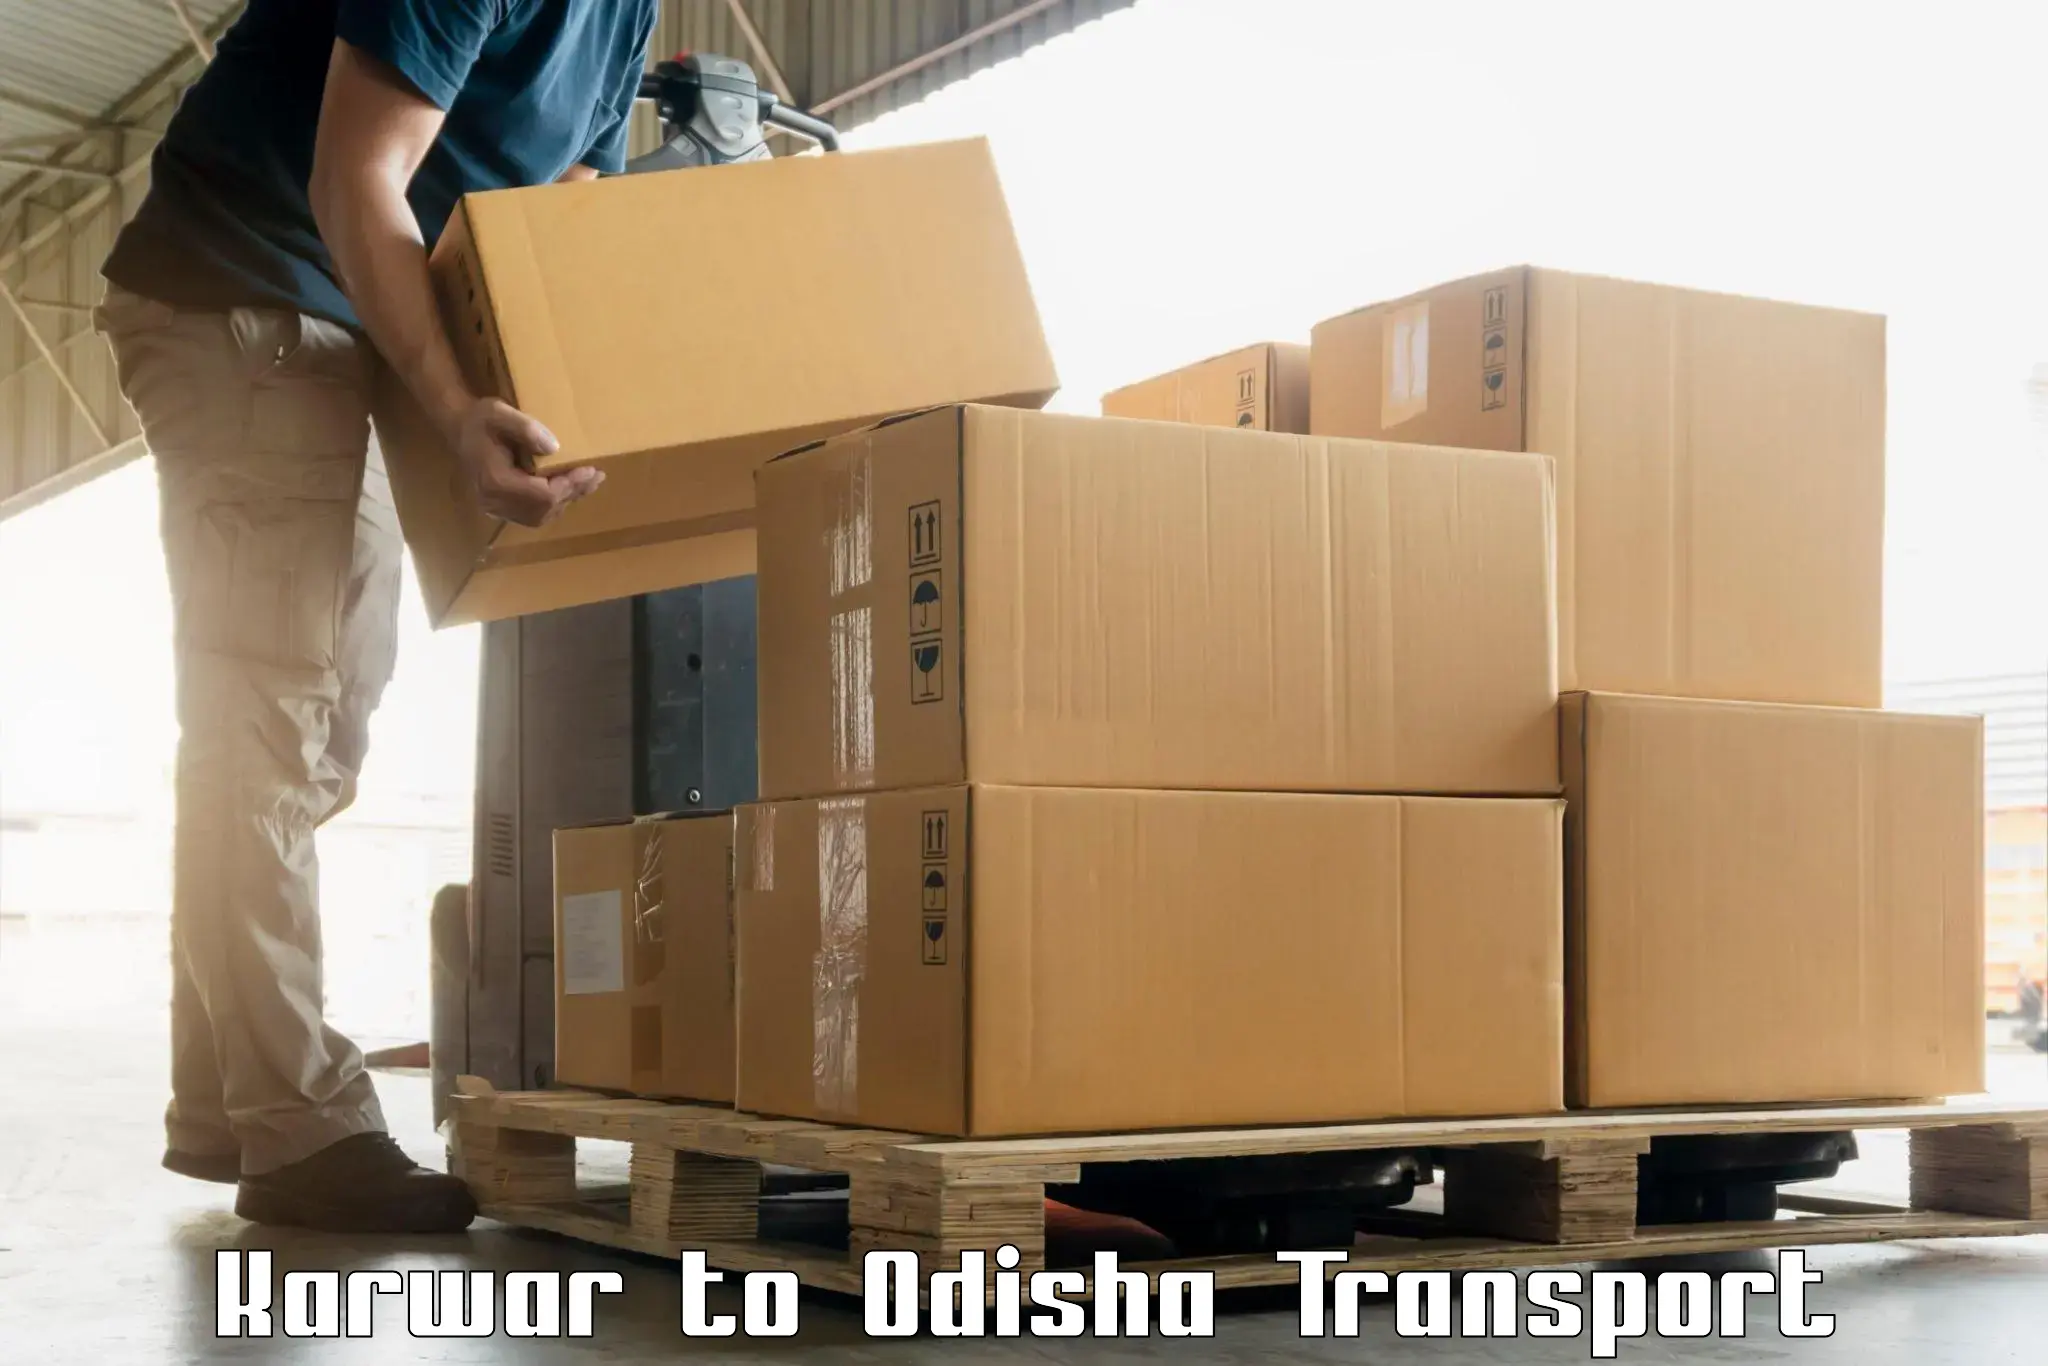 India truck logistics services Karwar to Paradip Port